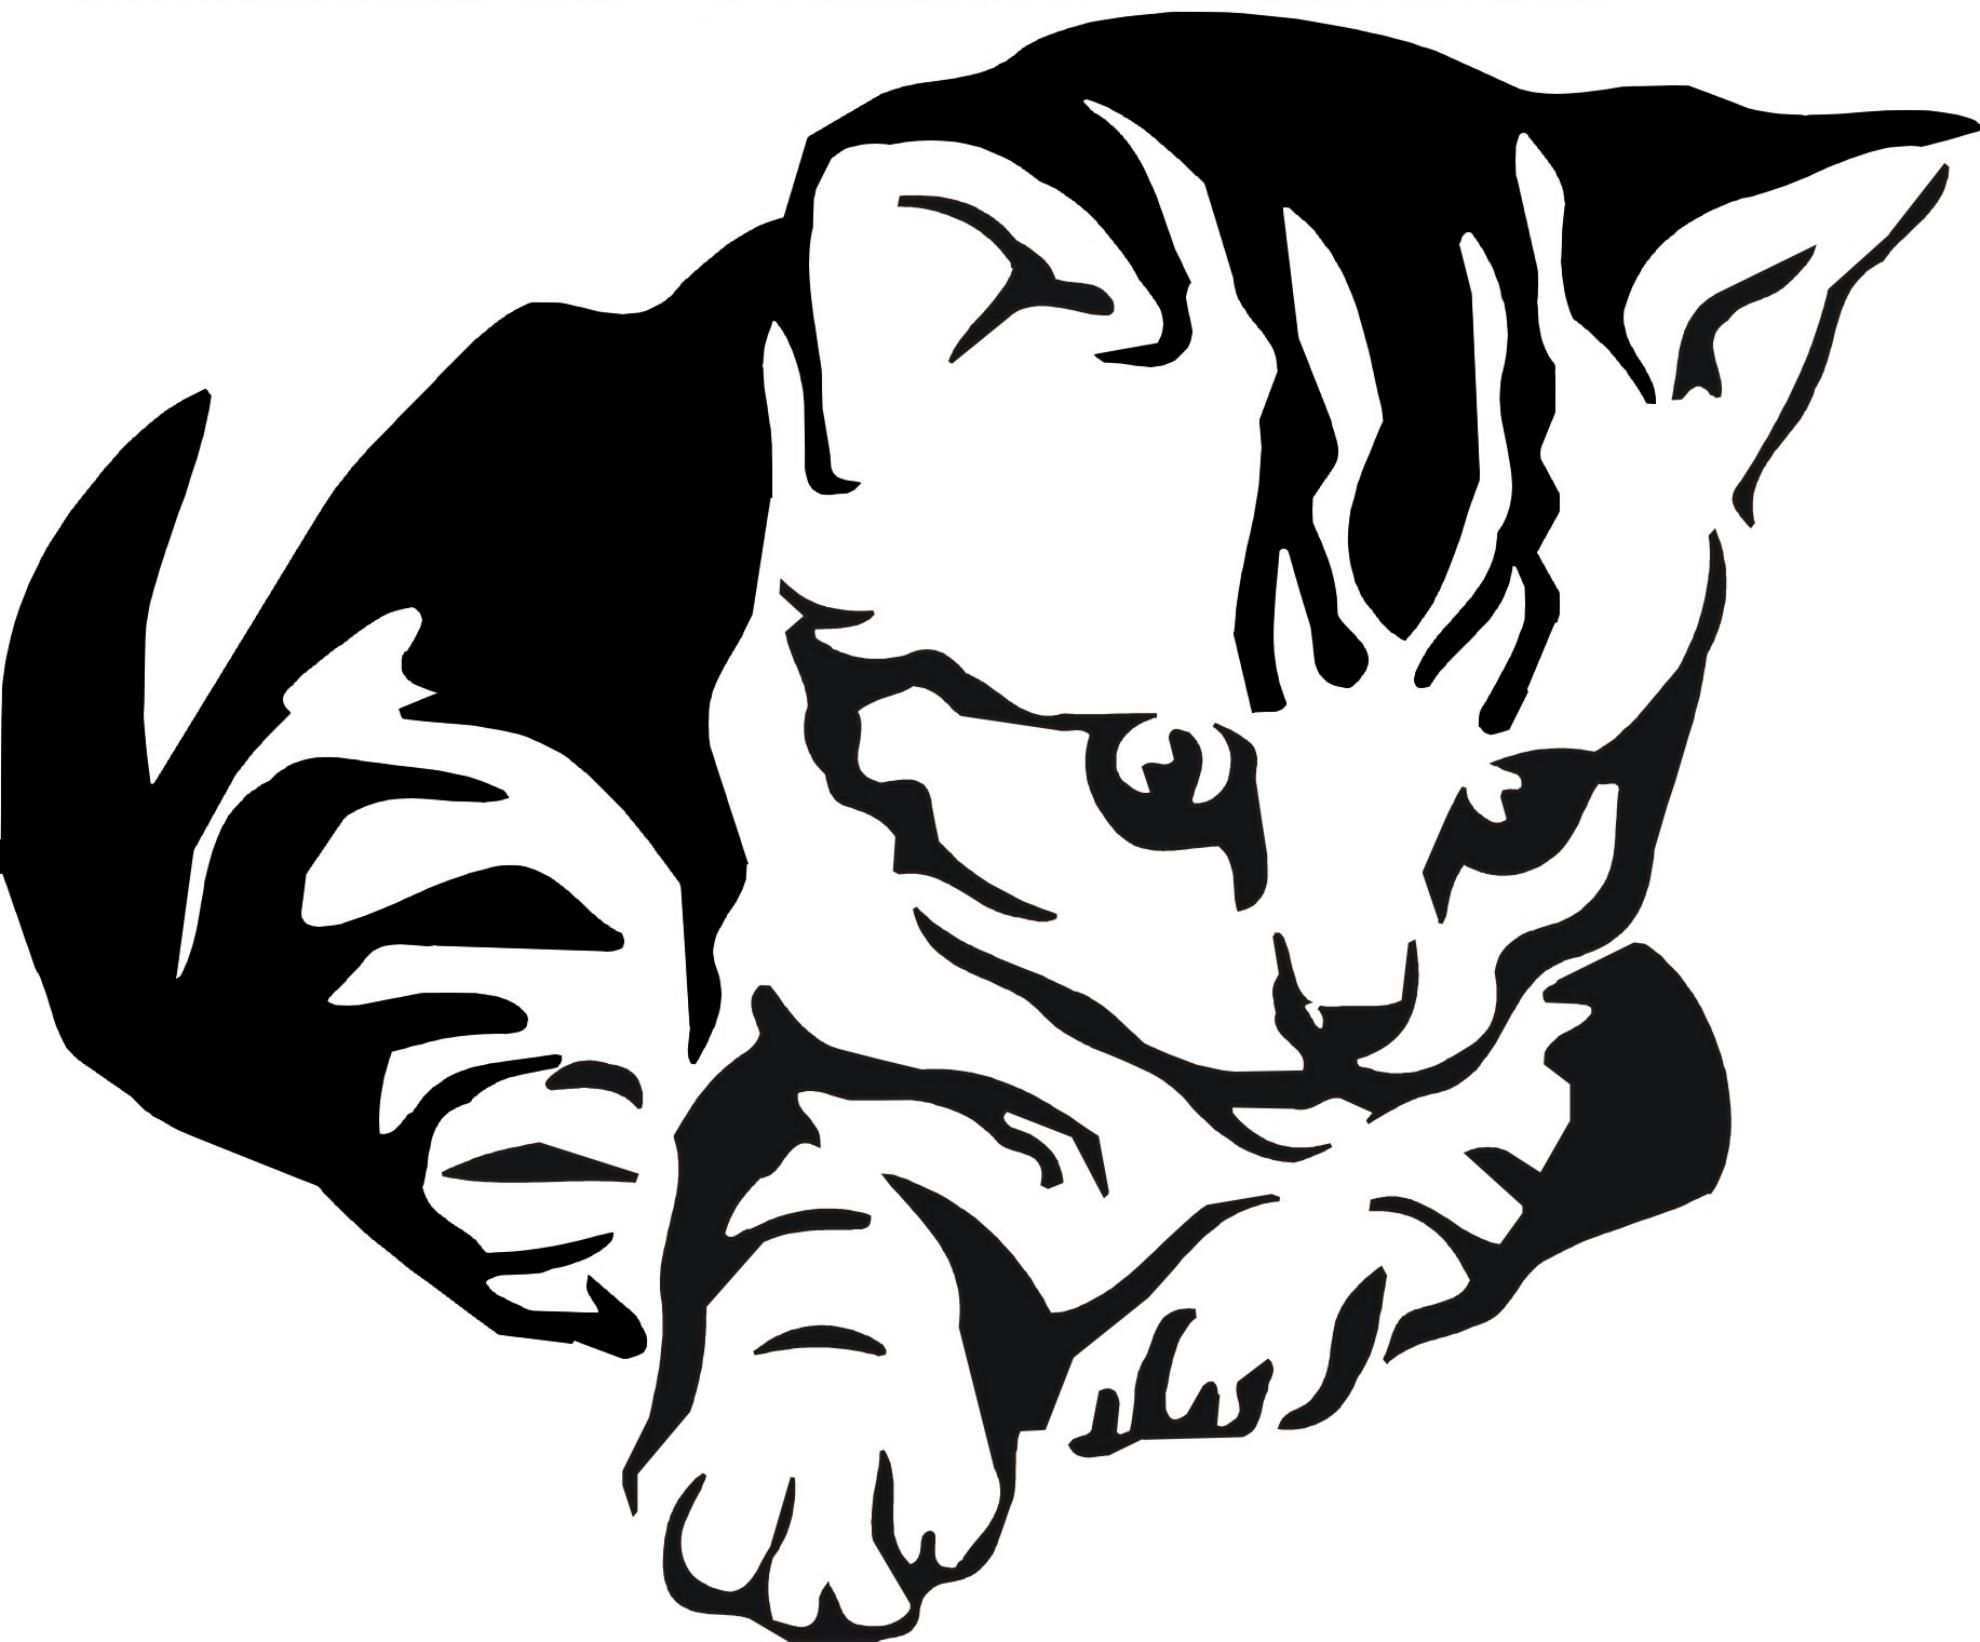 Http Www Kreativ Design Online De Shop Images A5 005 20katze 201 Jpg Katzen Silhouette Tiere Malen Katzenzeichnung